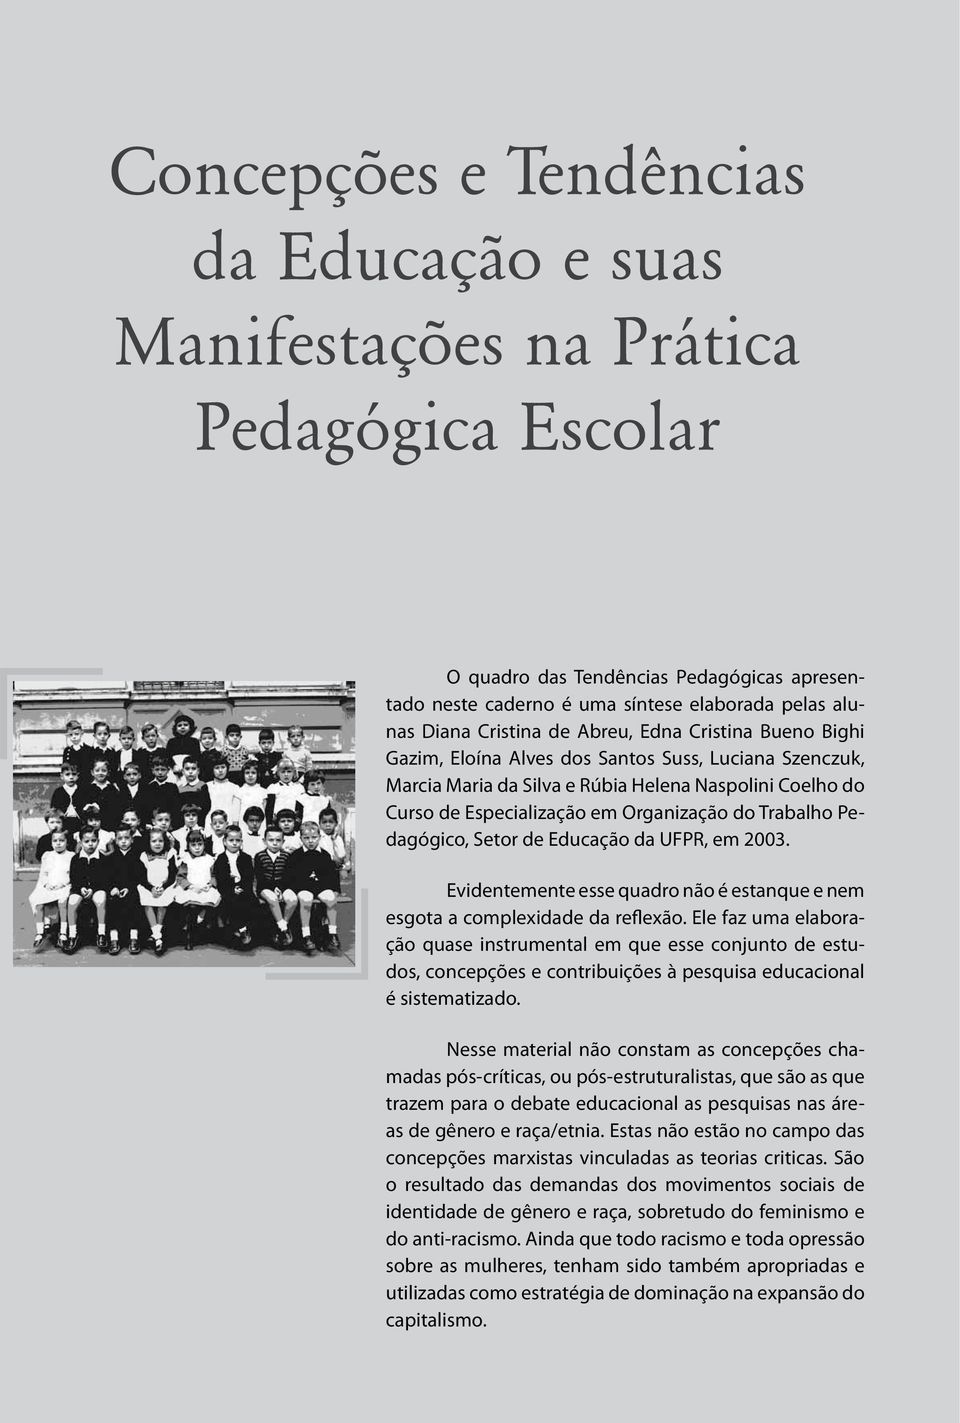 Organização do Trabalho Pedagógico, Setor de Educação da UFPR, em 2003. Evidentemente esse quadro não é estanque e nem esgota a complexidade da reflexão.